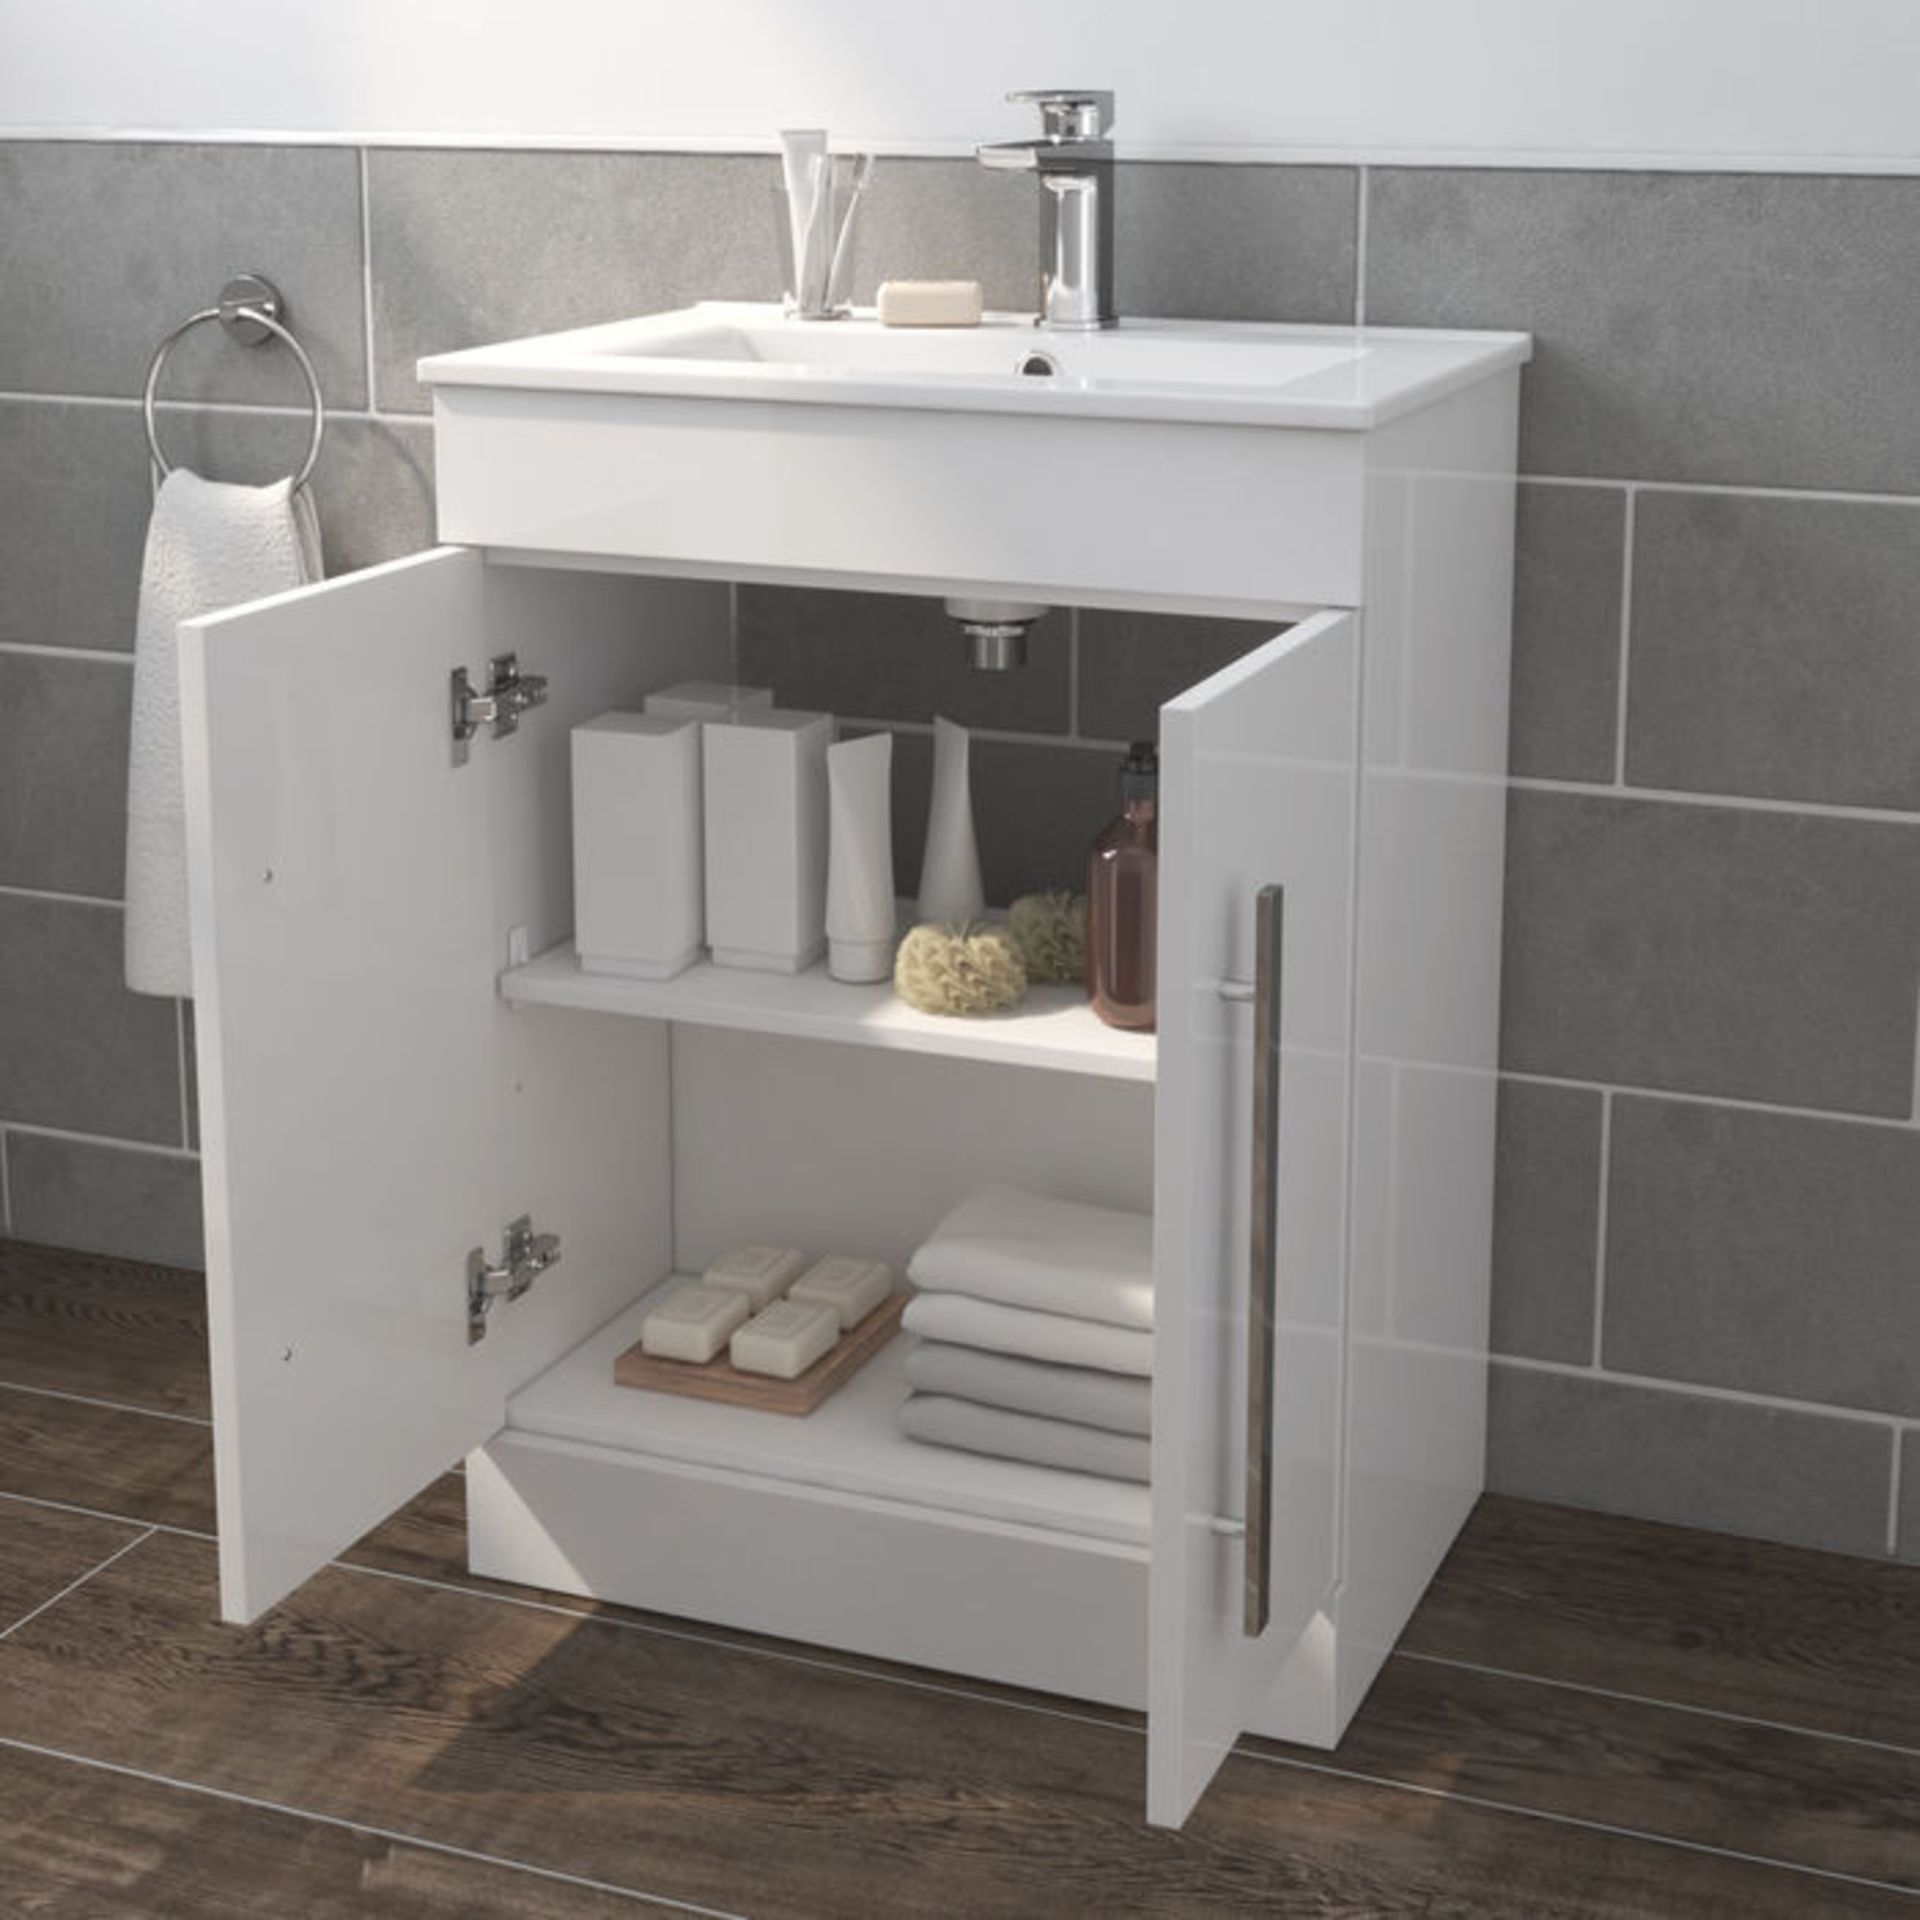 (LL22) 600mm Avon High Gloss White Sink Cabinet - Floor Standing. RRP £139.99. Rectangular floor - Image 2 of 4